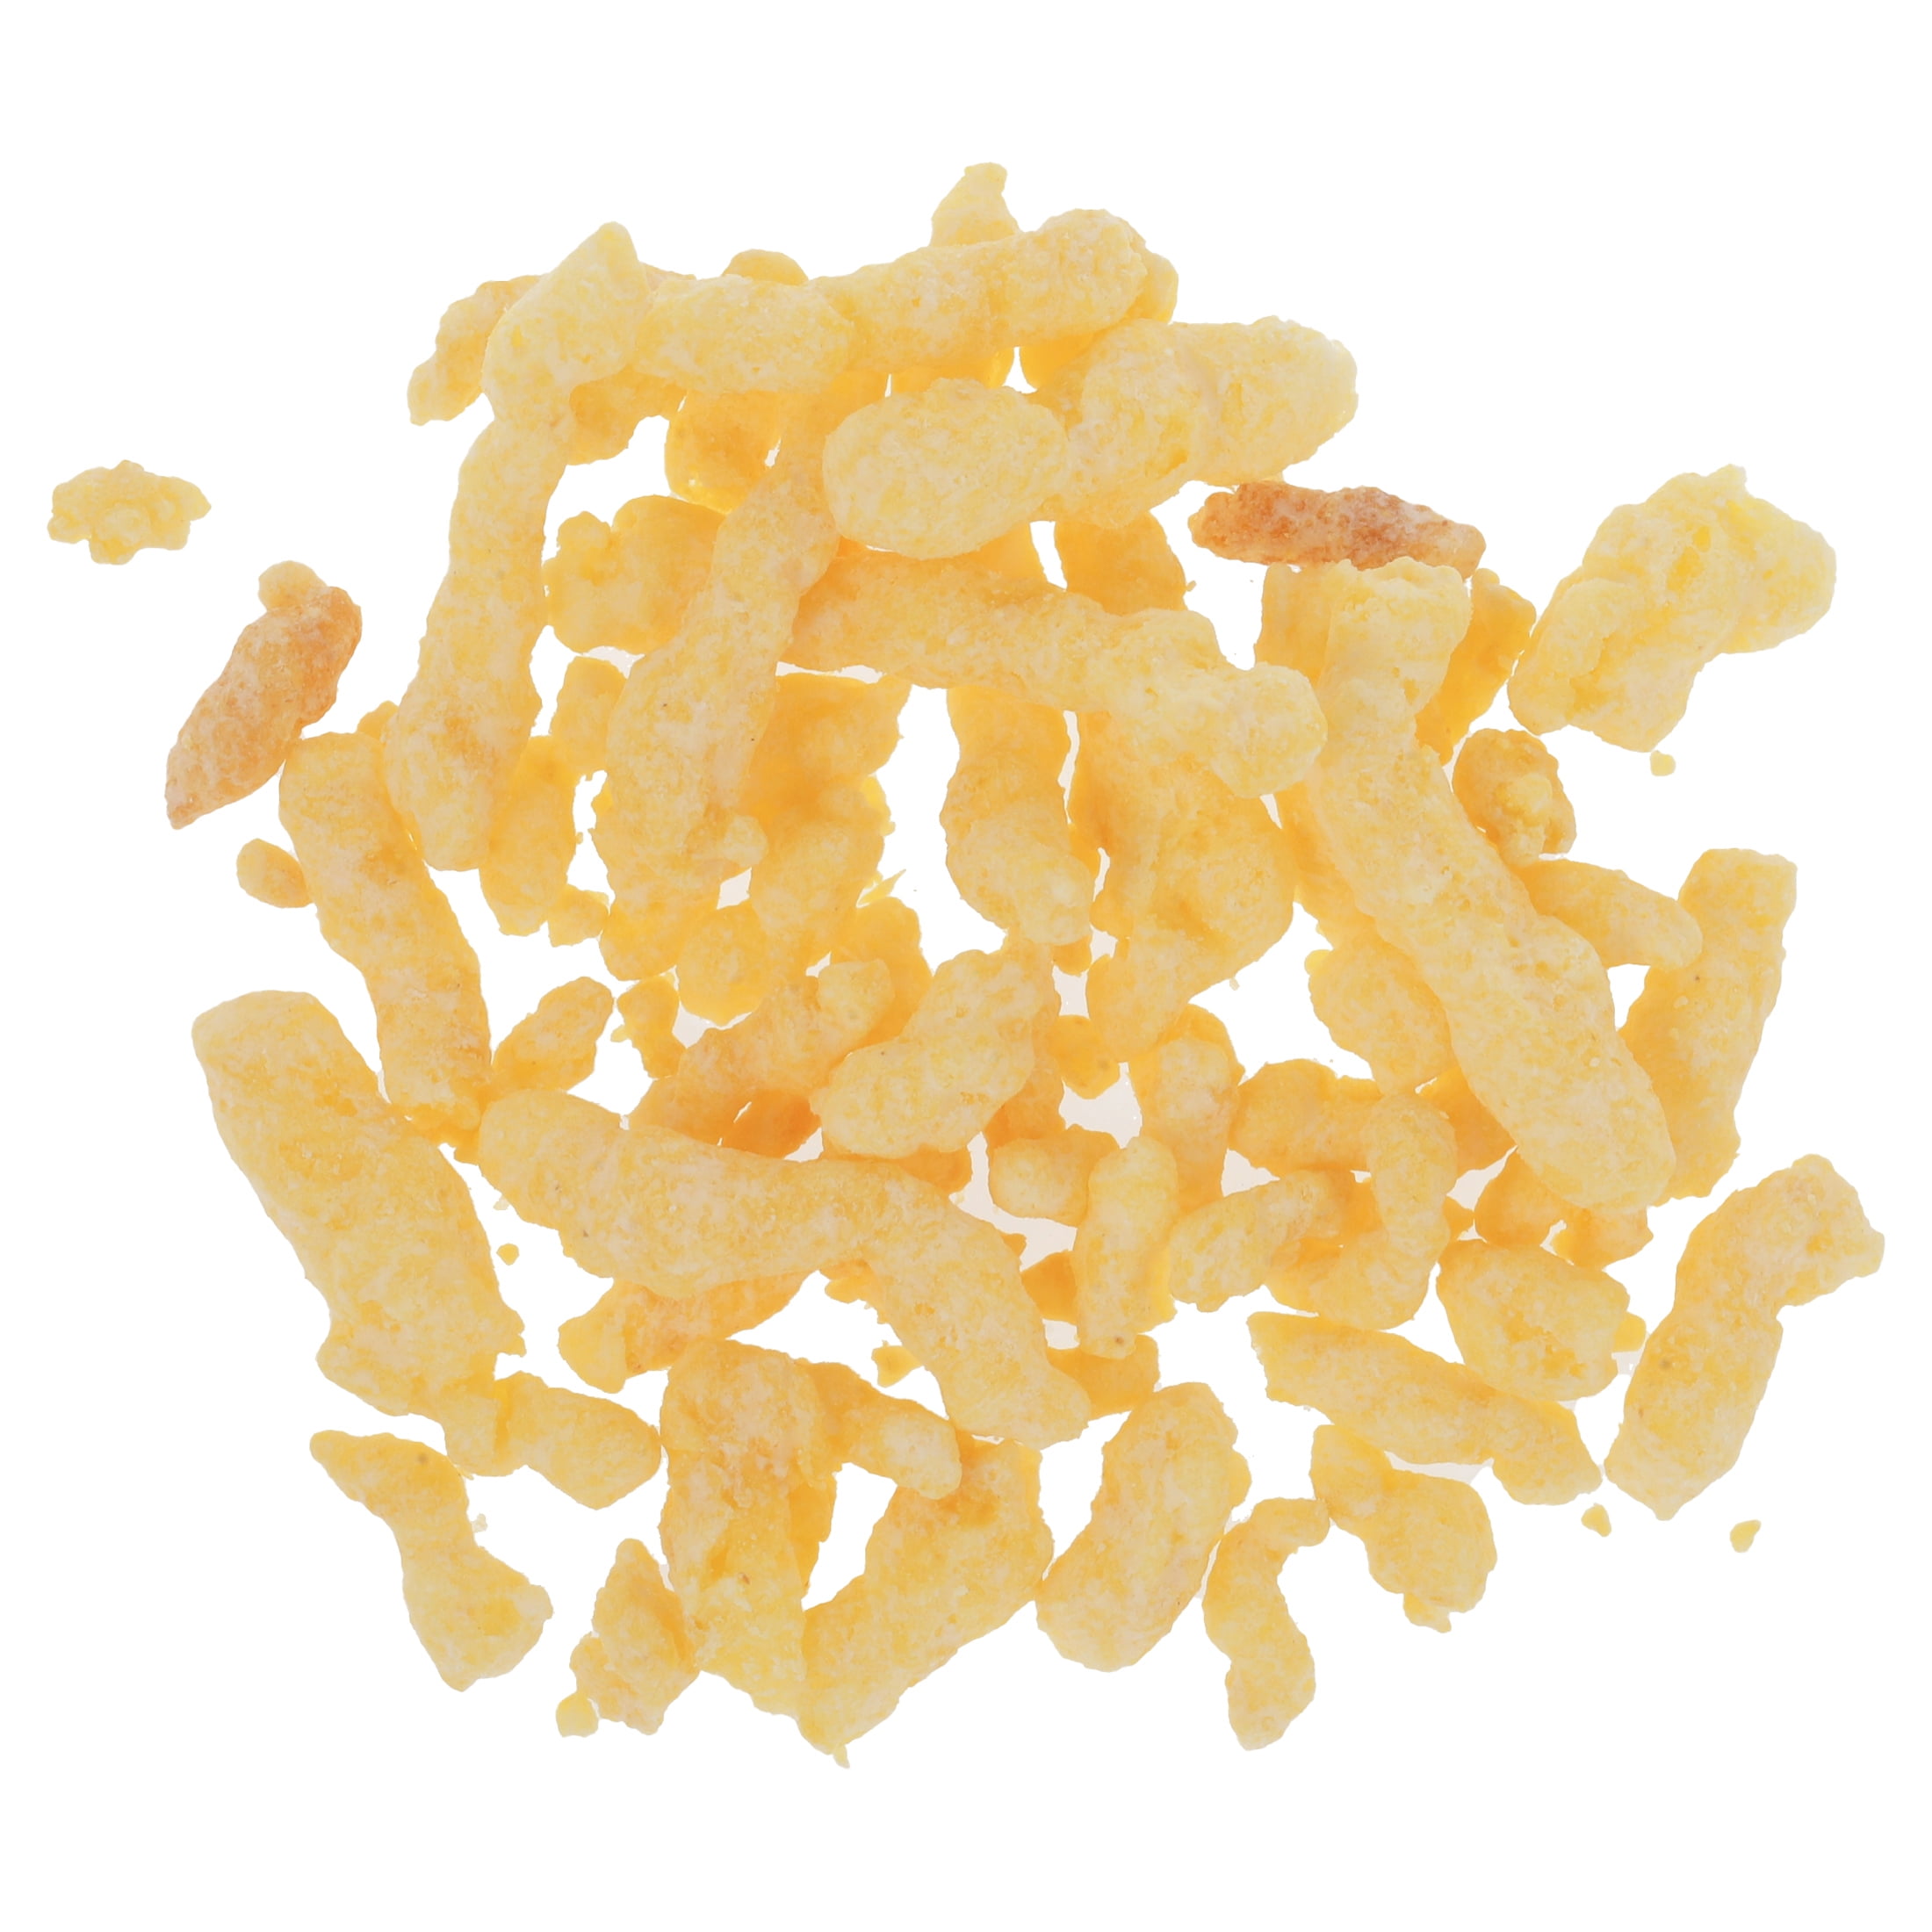 Respondendo a @Tess ✨ Cheetos Crunchy White Cheddar #focanosabor #chee